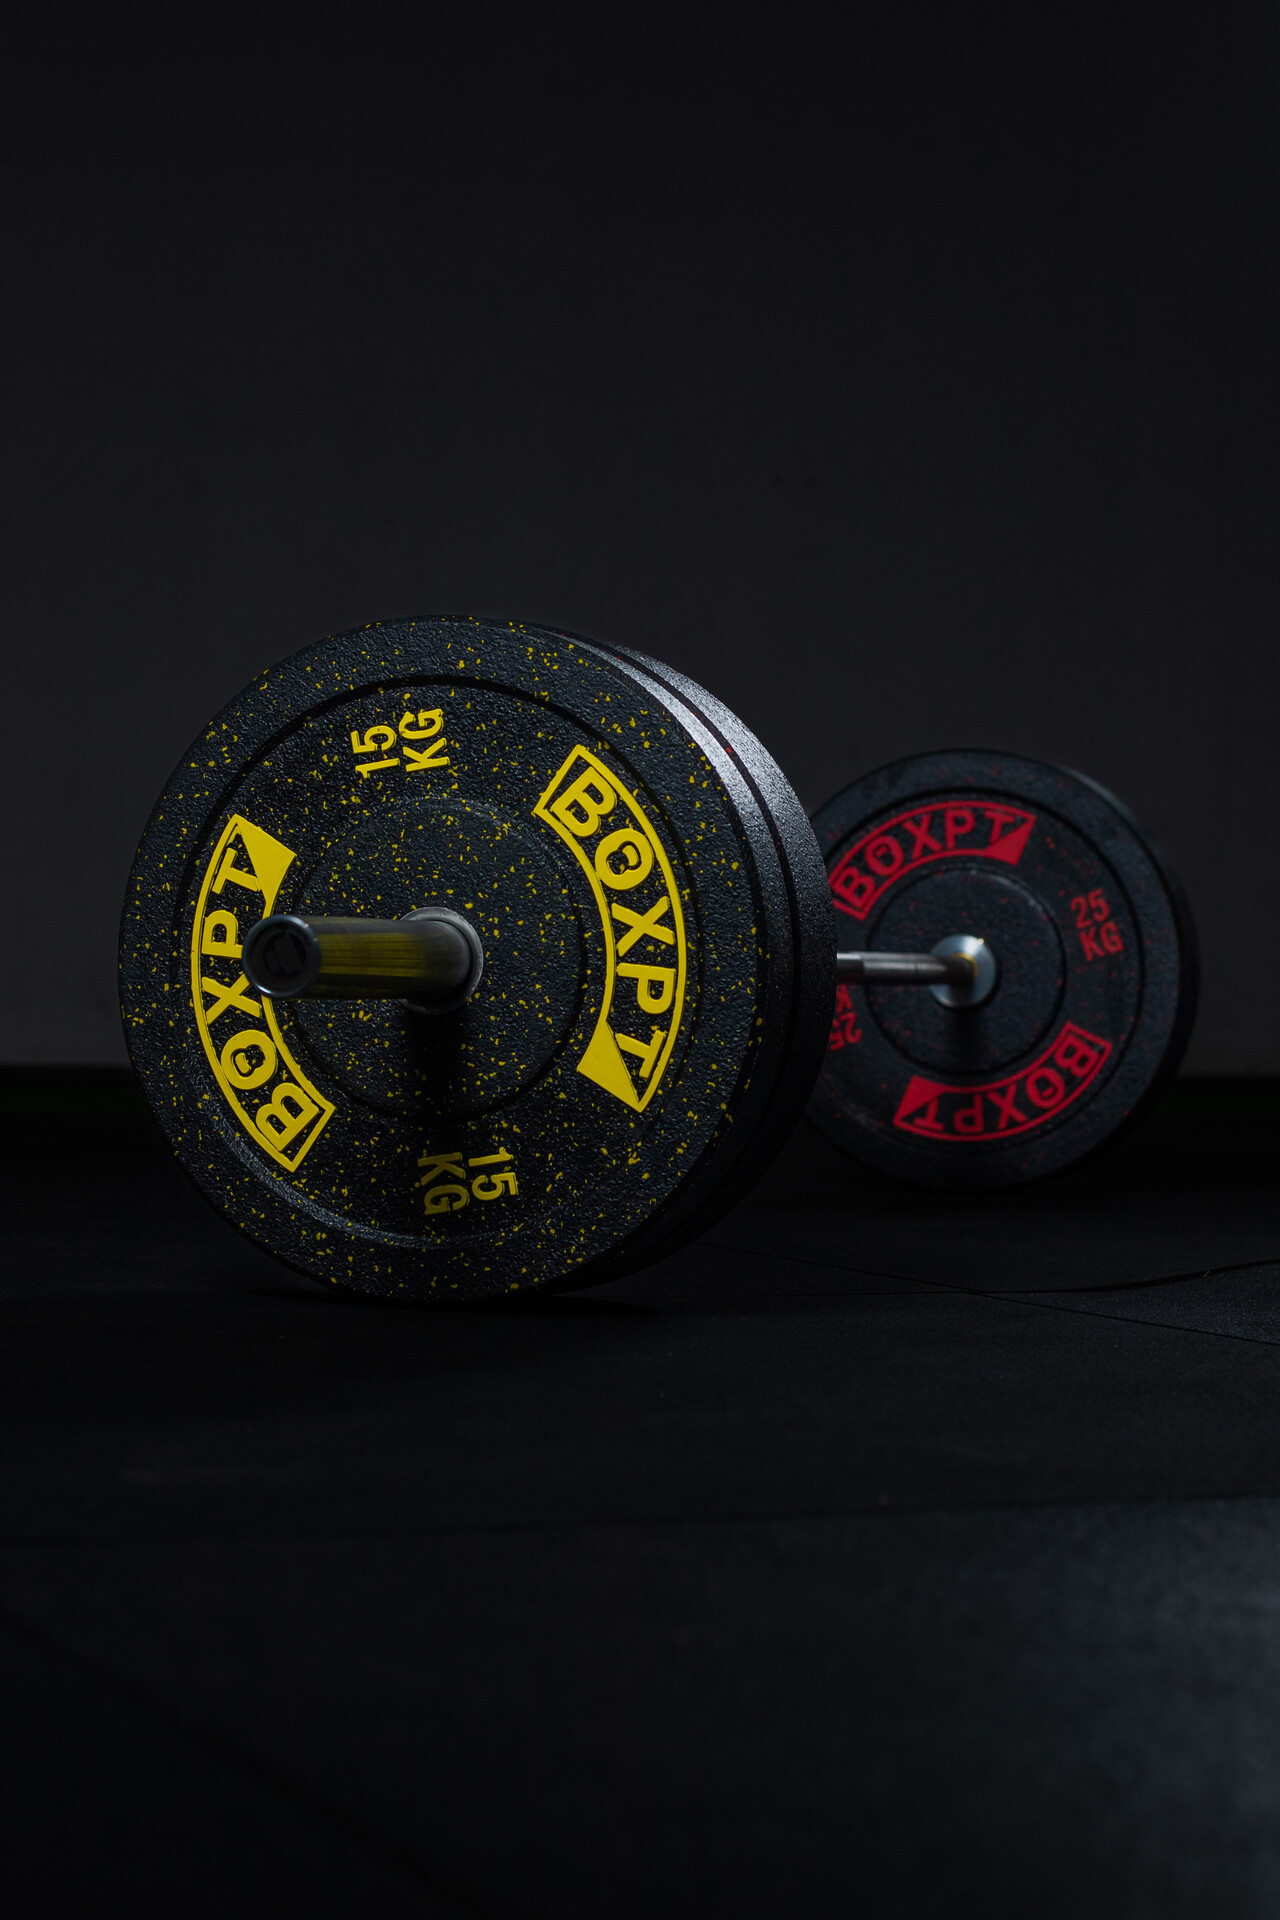 Discos olímpicos Ader, negros, de 0.7-45.35 kg, 5.08 cm